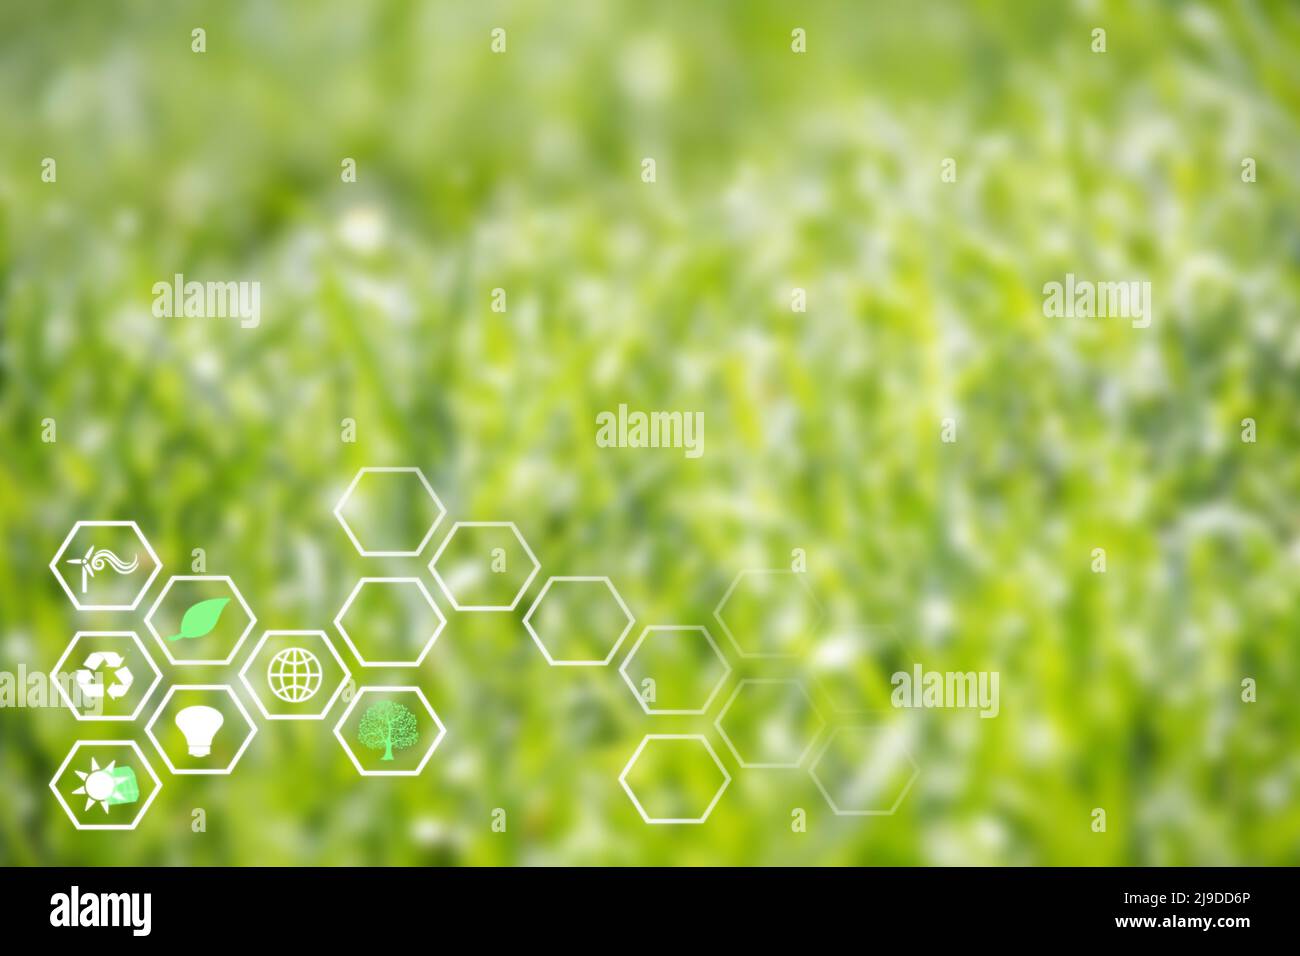 Fond vert de nature avec des icônes d'énergie renouvelable, hexagons. Développement de l'énergie verte et éco-durable Banque D'Images